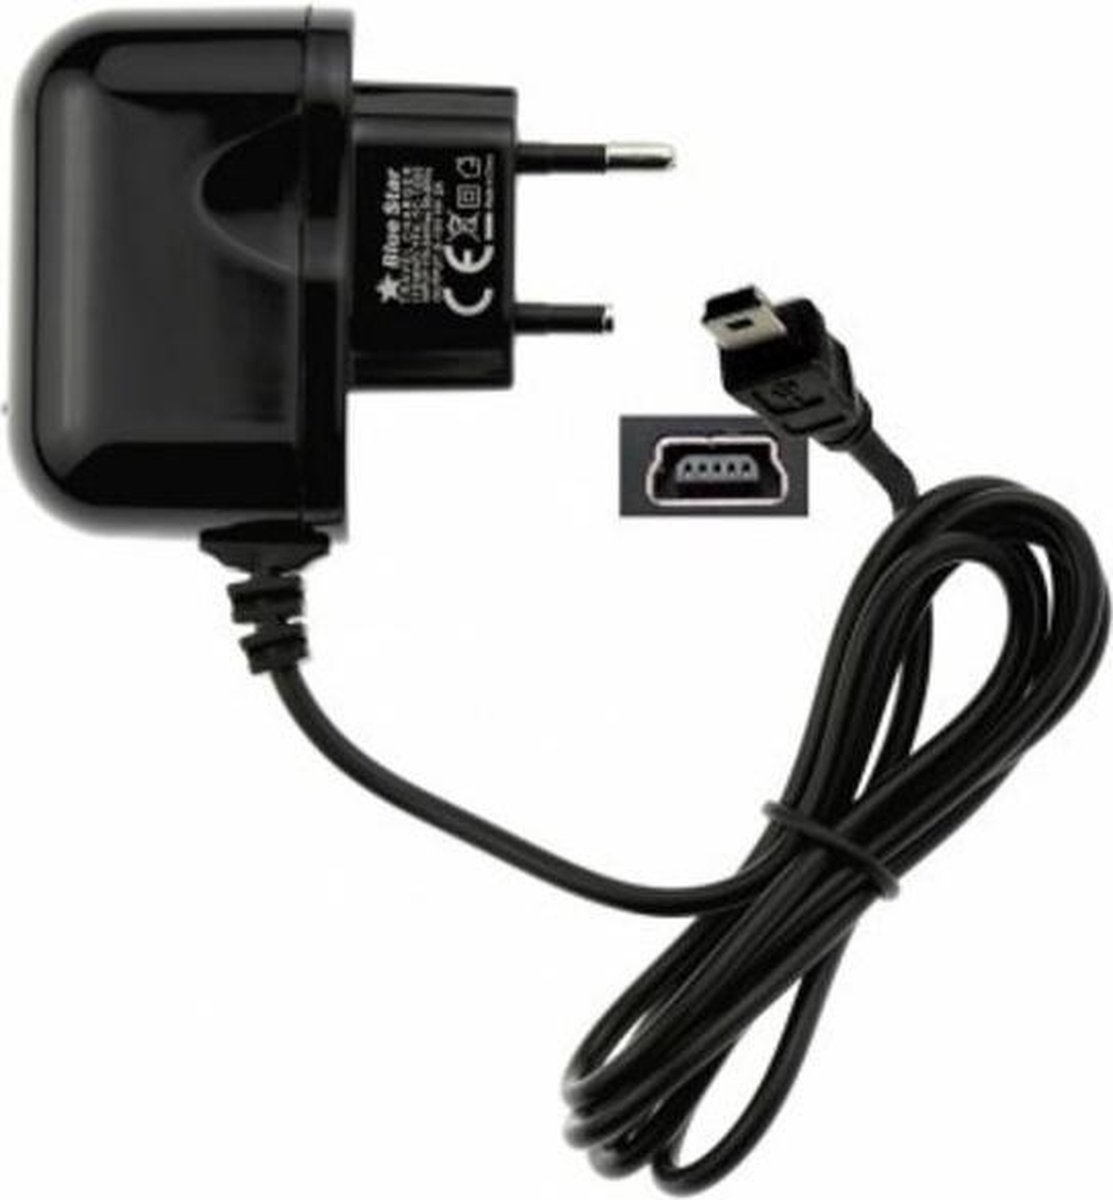 Oplader 220V geschikt voor Garmin Nuvi 42 - 2 ampere mini USB lader - ABC-Led